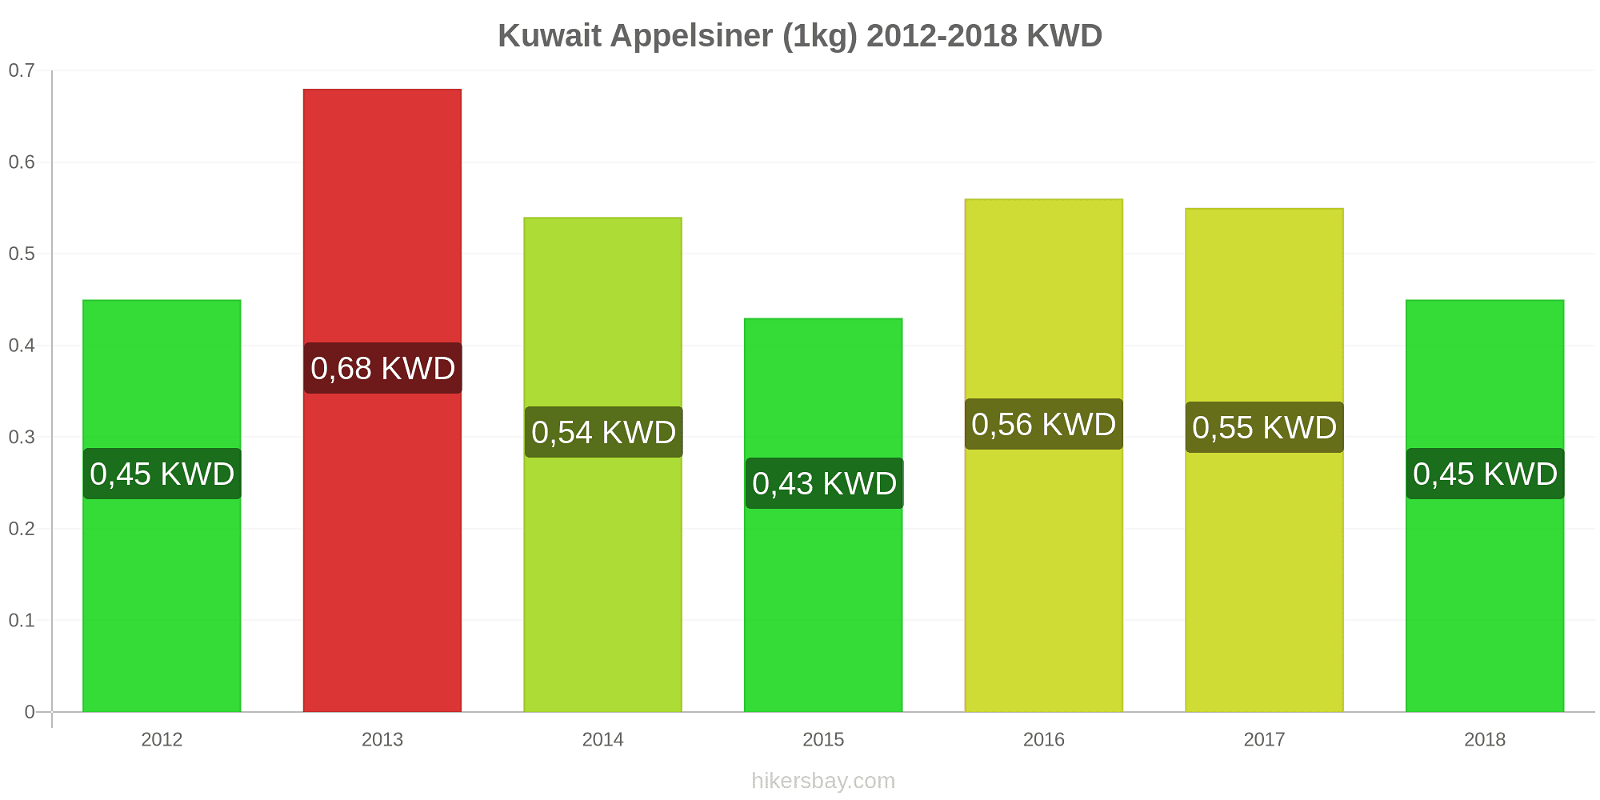 Kuwait prisændringer Appelsiner (1kg) hikersbay.com